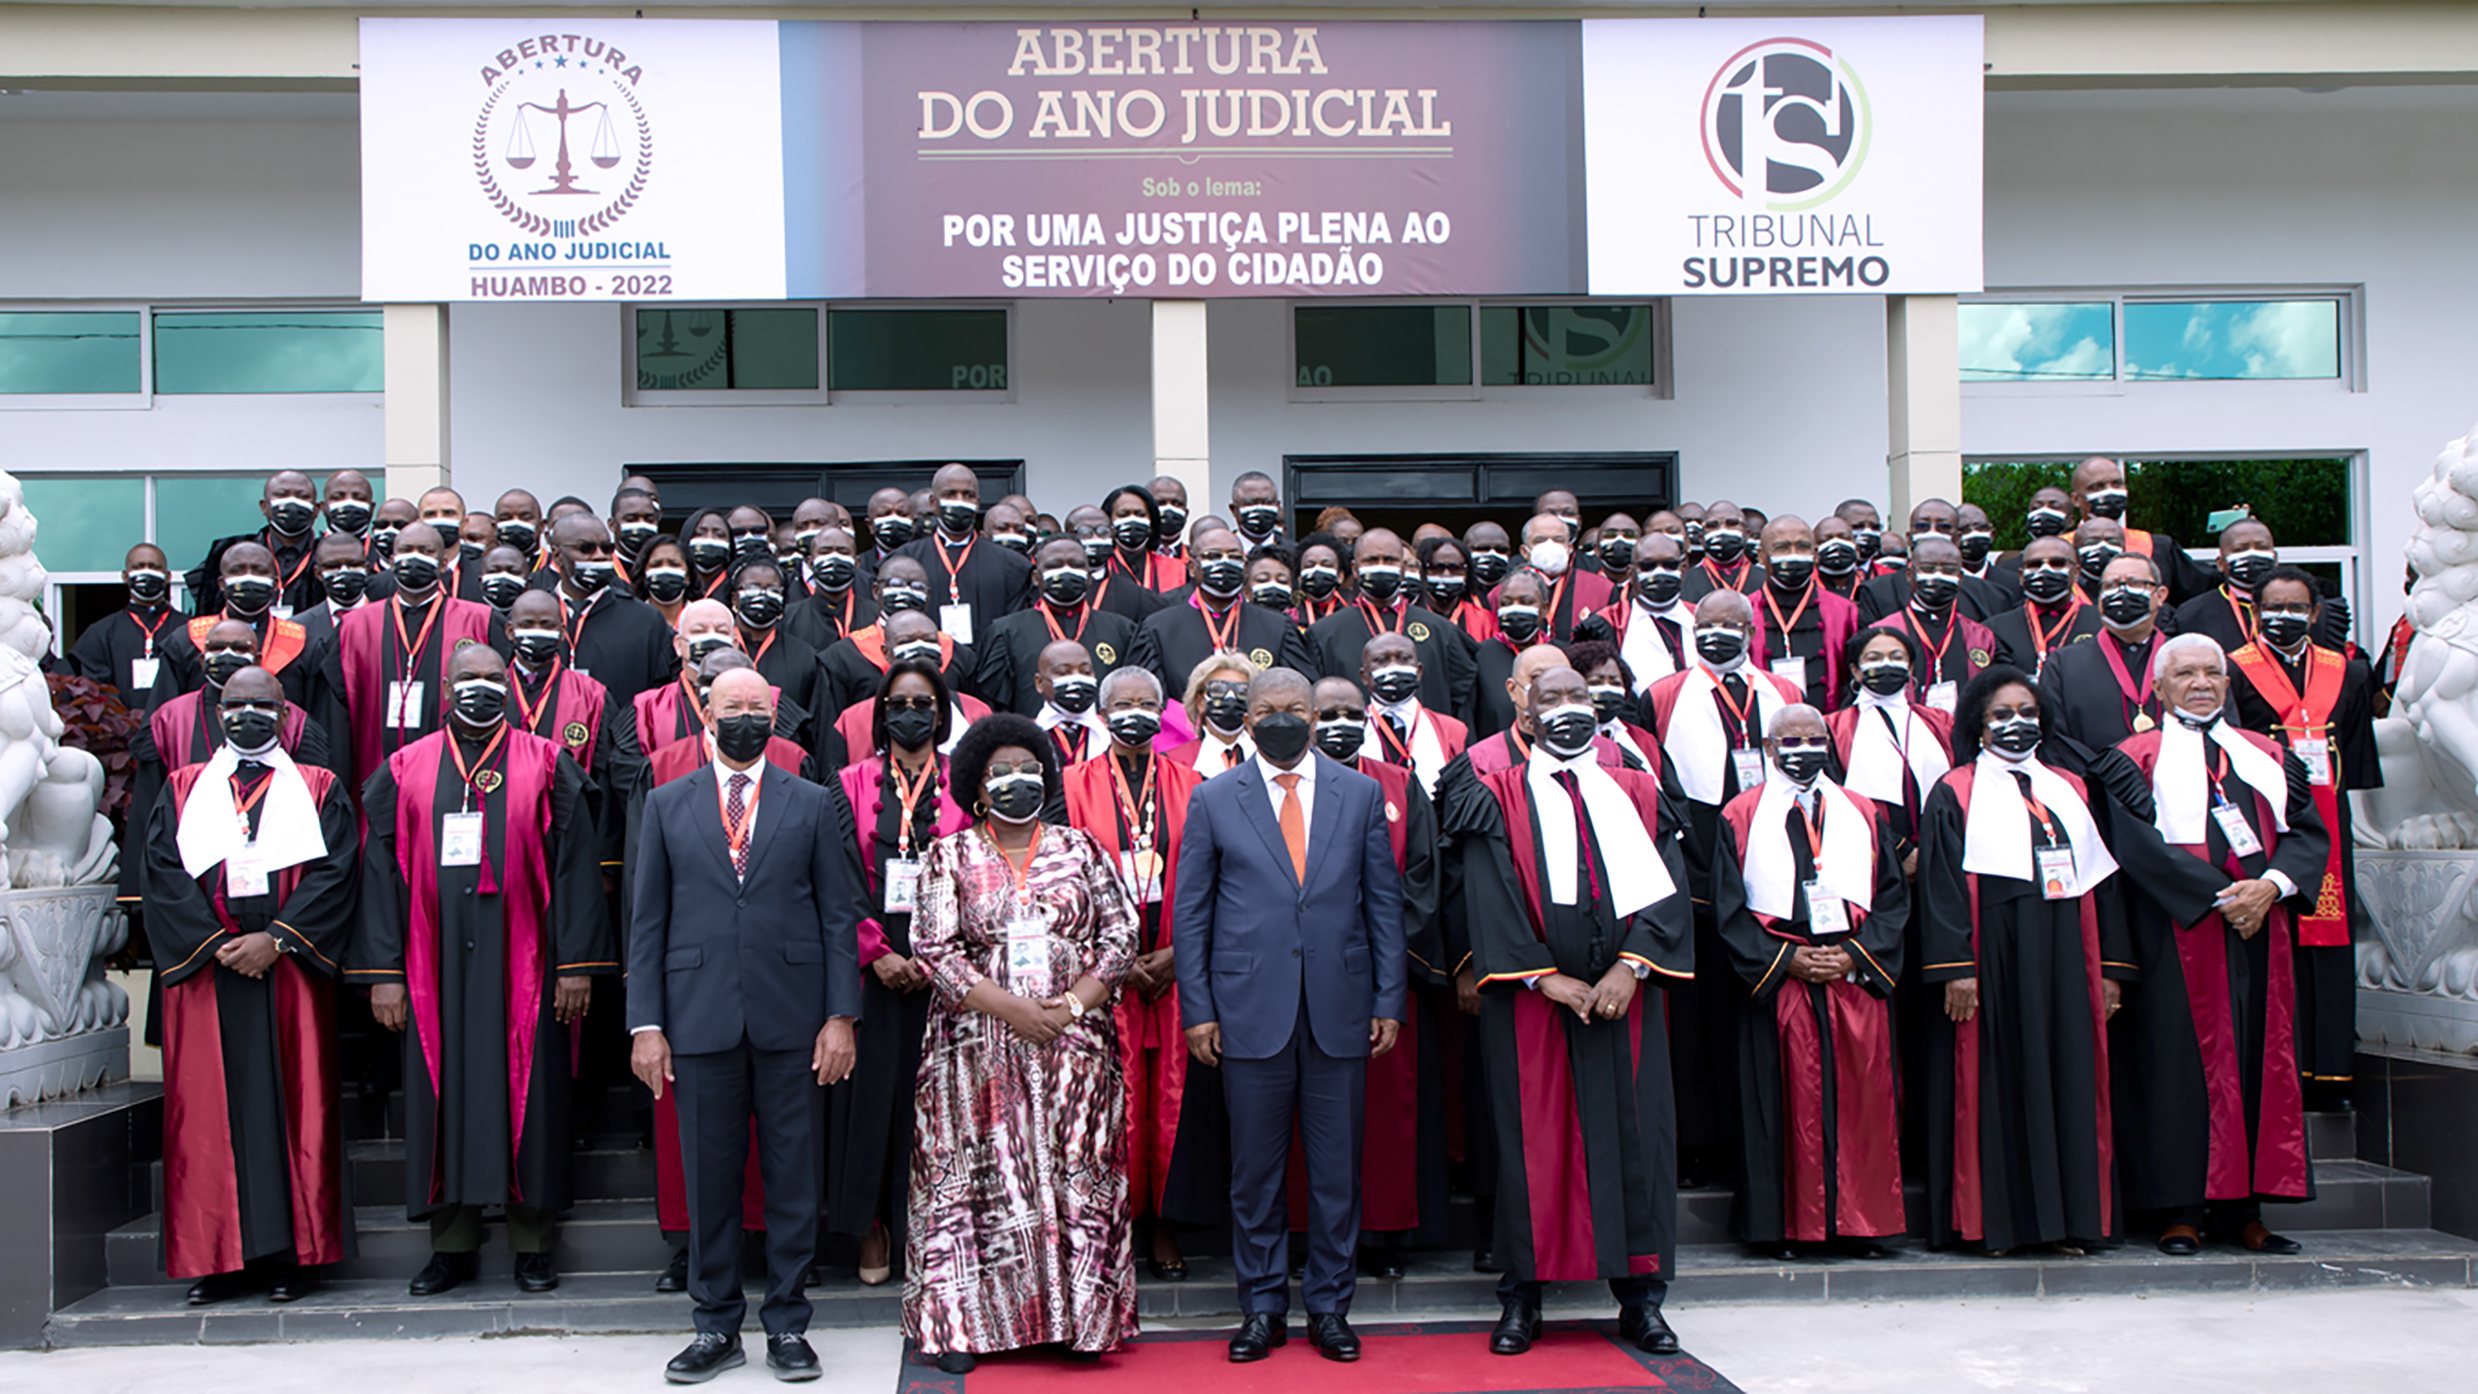 Abertura do ano judicial em Angola